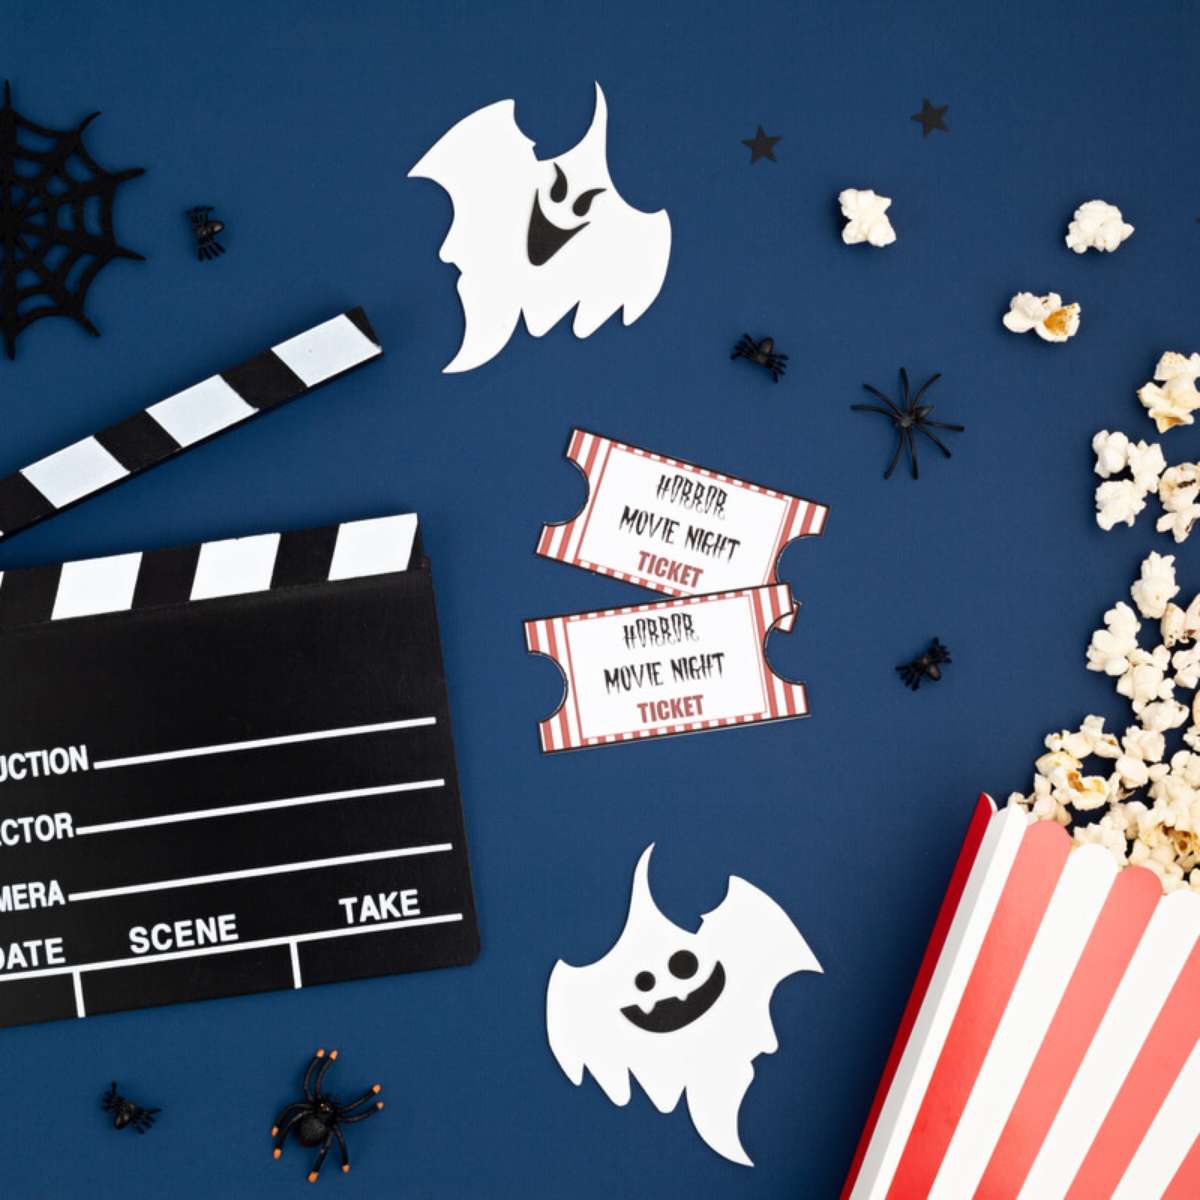 12 Filmes com Bruxas para o Halloween - CinePOP